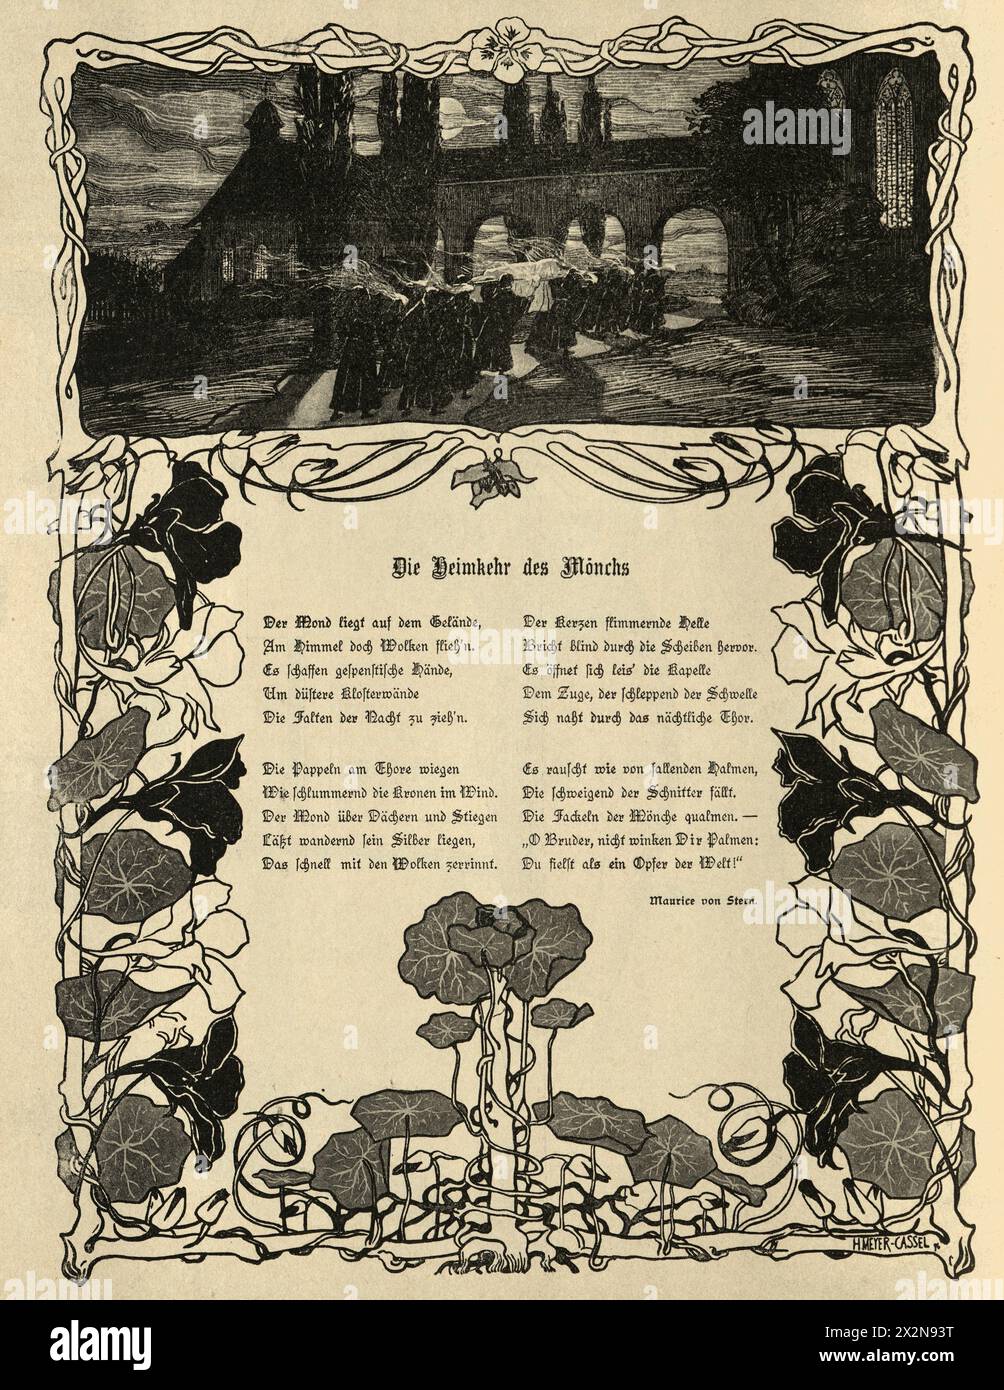 Illustration vintage, retour og les moines, Jugendstil, Art Nouveau, années 1890, XIXe siècle. Banque D'Images